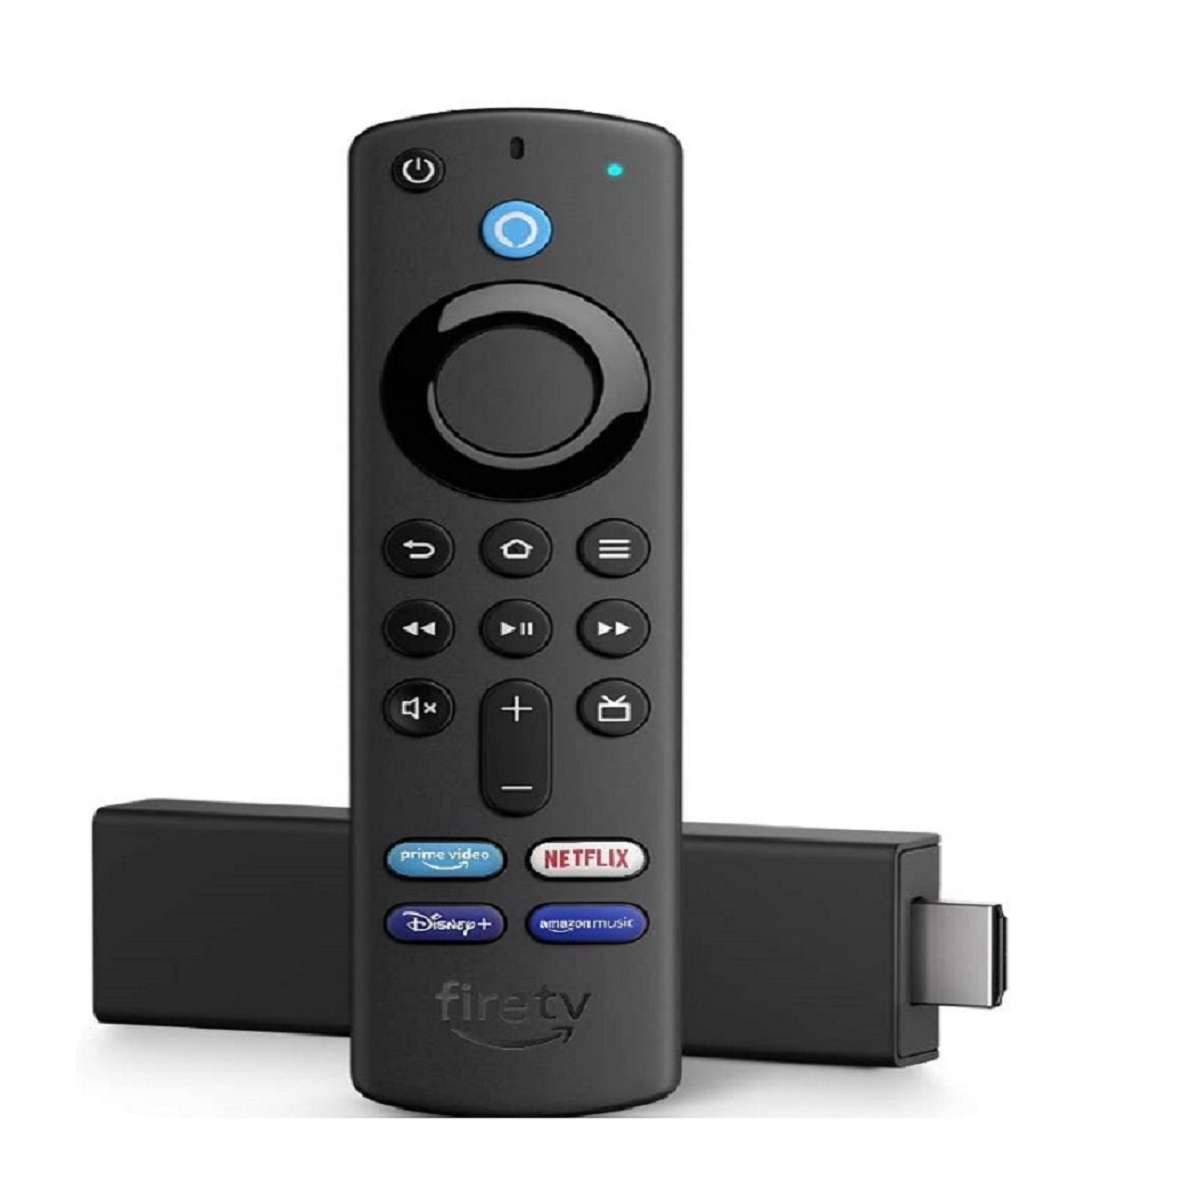  Control remoto de repuesto con baterías (incluye controles de TV)  para  TV Stick, para  TV Stick 4K, para  TV Stick Lite,  para  TV Stick Max, para